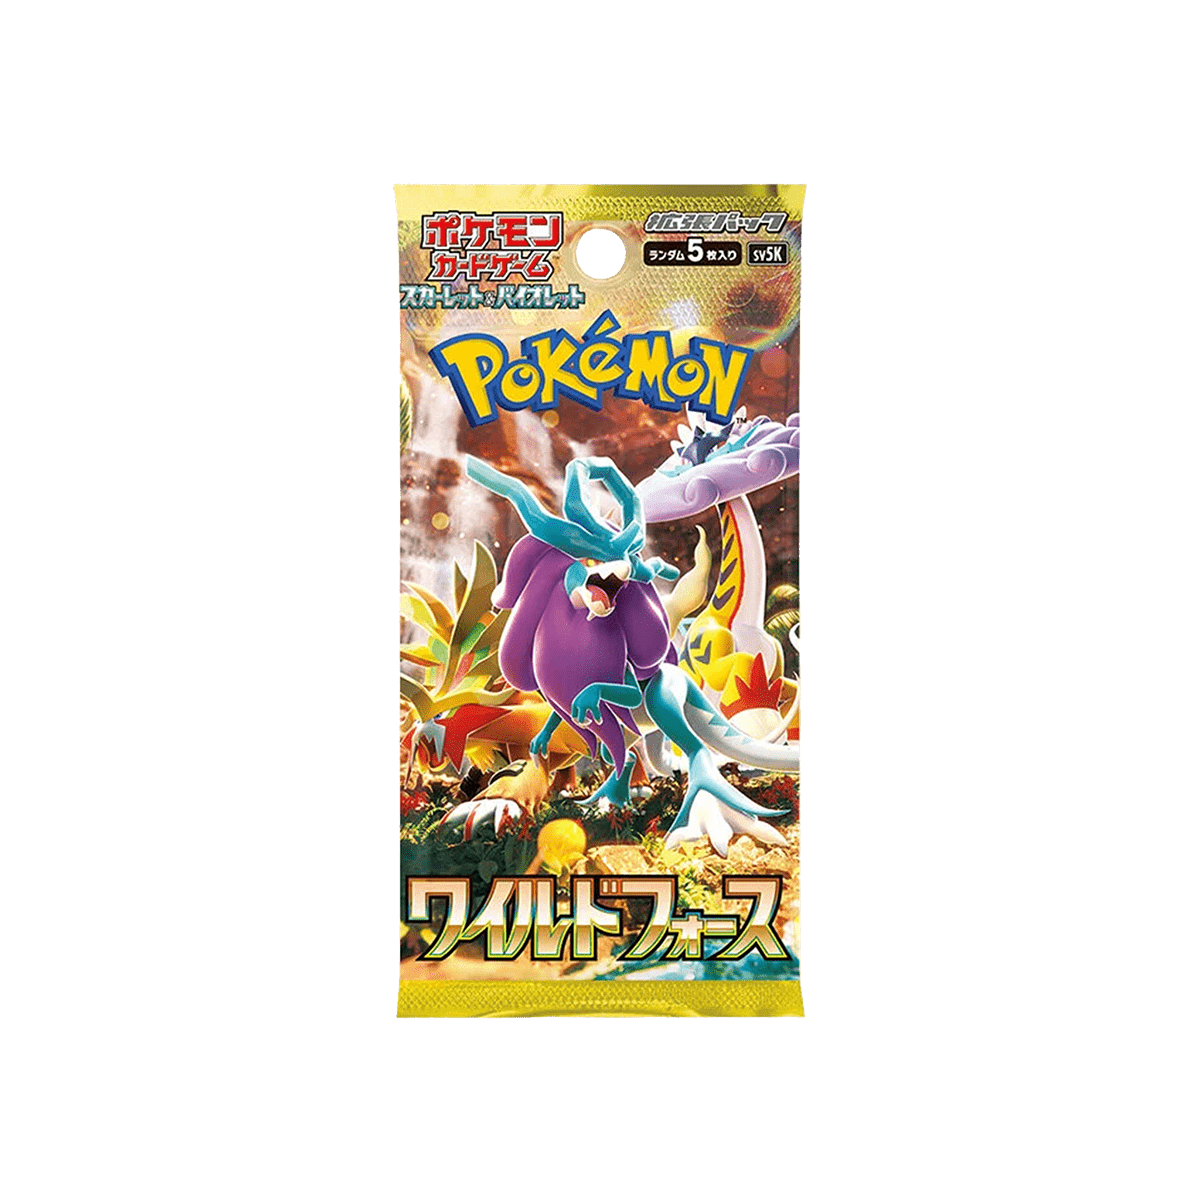 Pokémon TCG - Wild Force Booster Box - Cardmaniac.ch